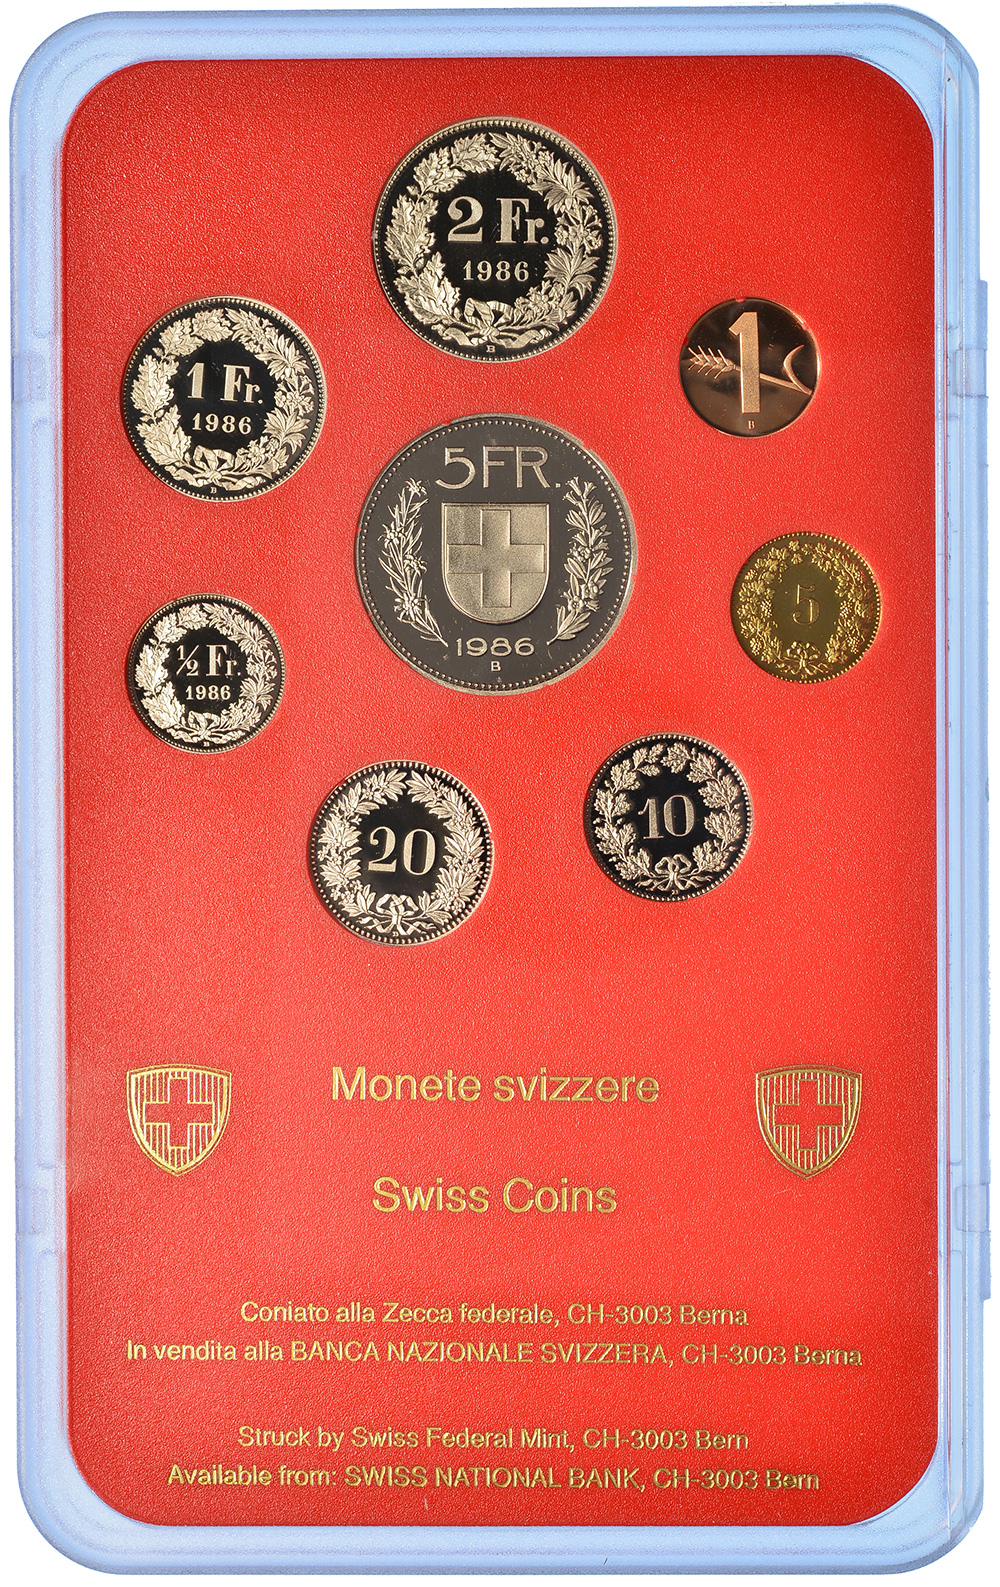 Münzensatz, 1986, Polierte Platte, Kupfer/Nickel